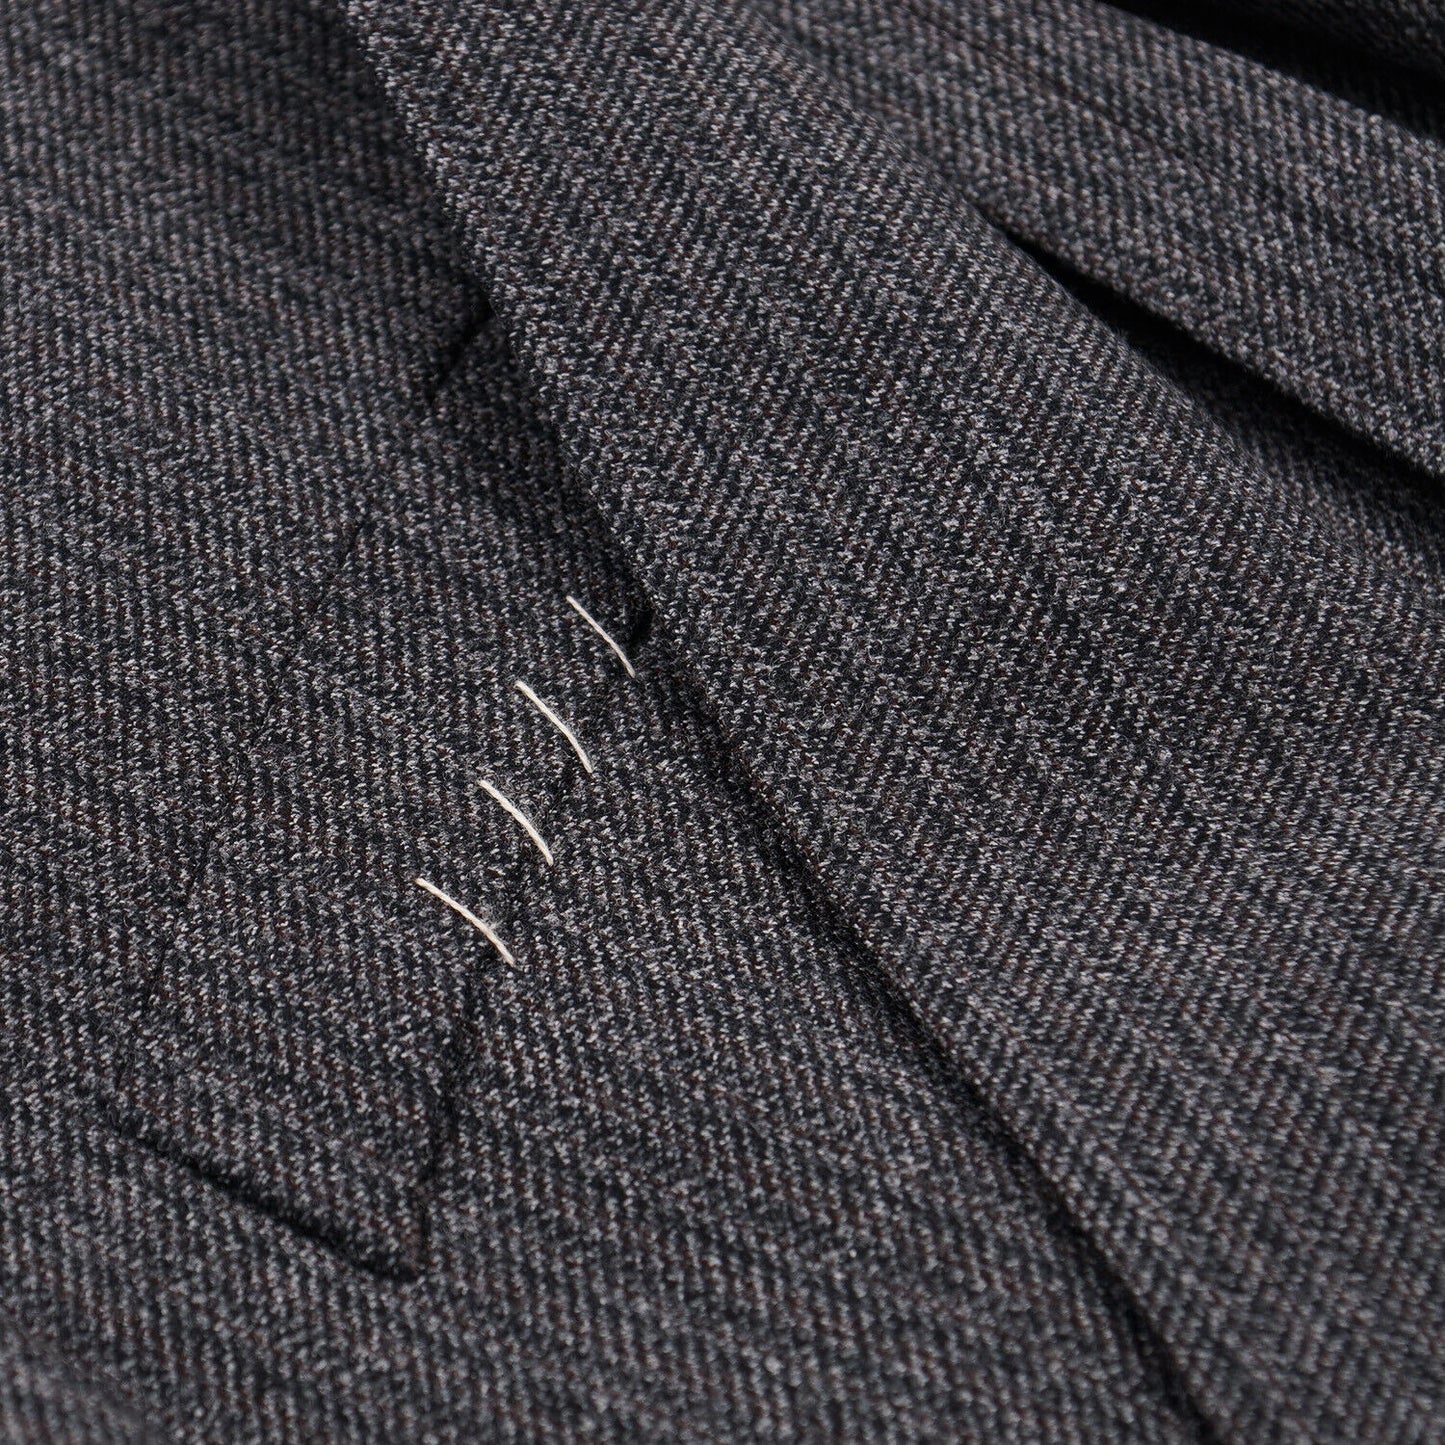 Boglioli Patterned Wool 'K Jacket' Suit - Top Shelf Apparel